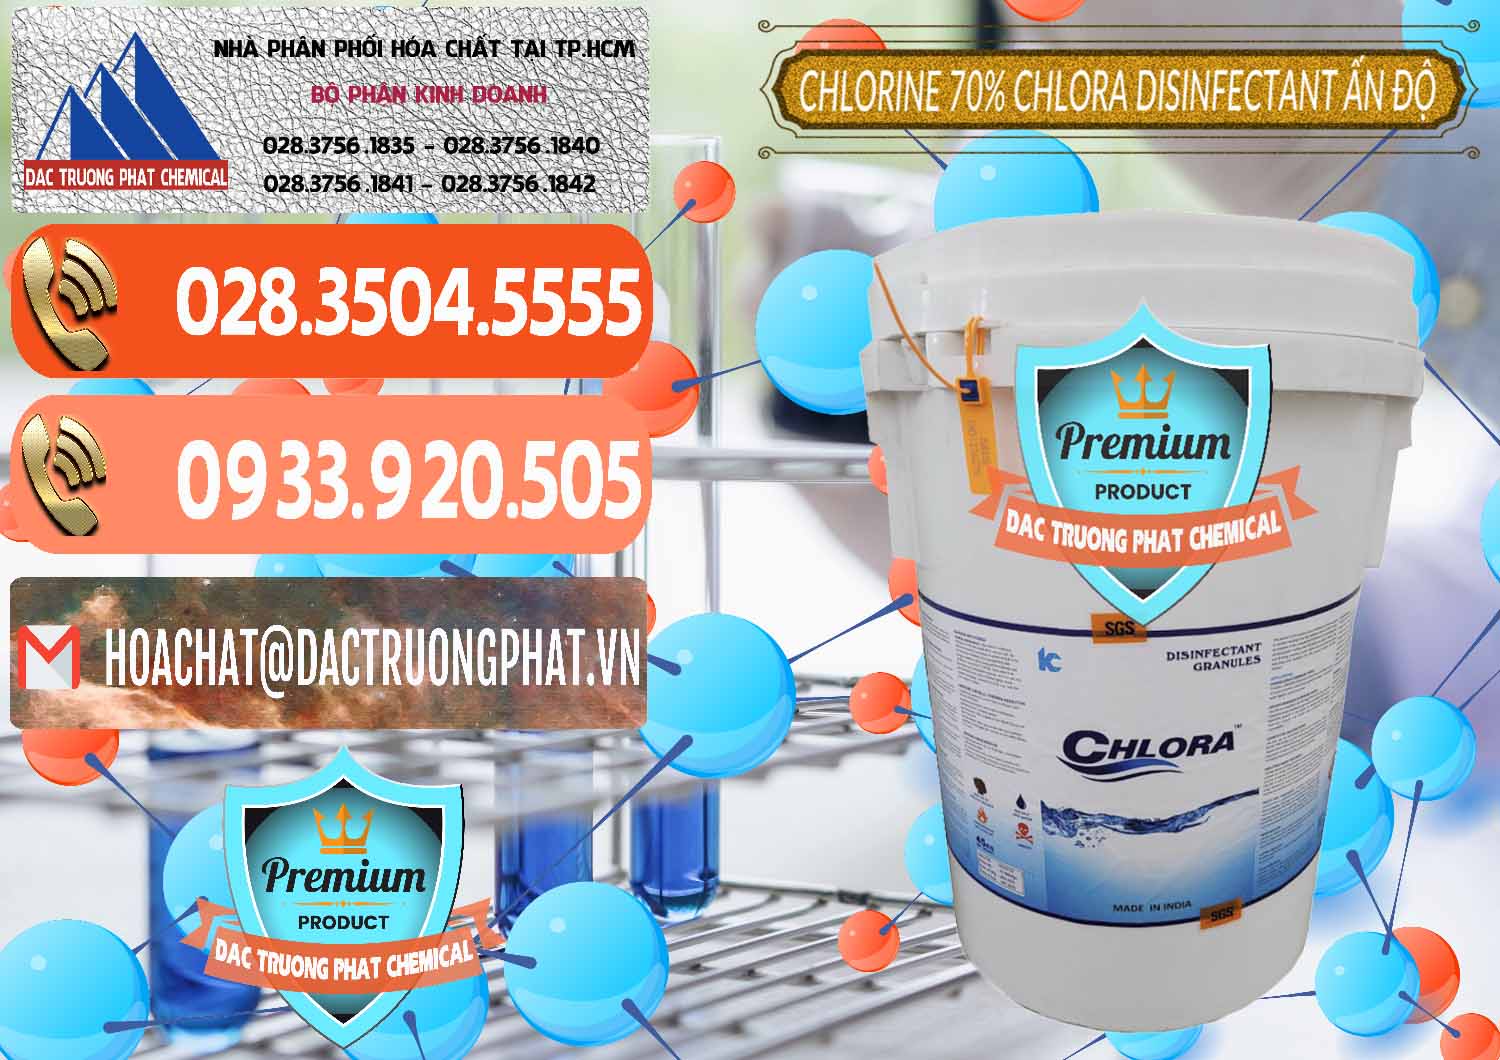 Công ty chuyên kinh doanh và bán Chlorine – Clorin 70% Chlora Disinfectant Ấn Độ India - 0213 - Công ty cung cấp & nhập khẩu hóa chất tại TP.HCM - hoachatmientay.com